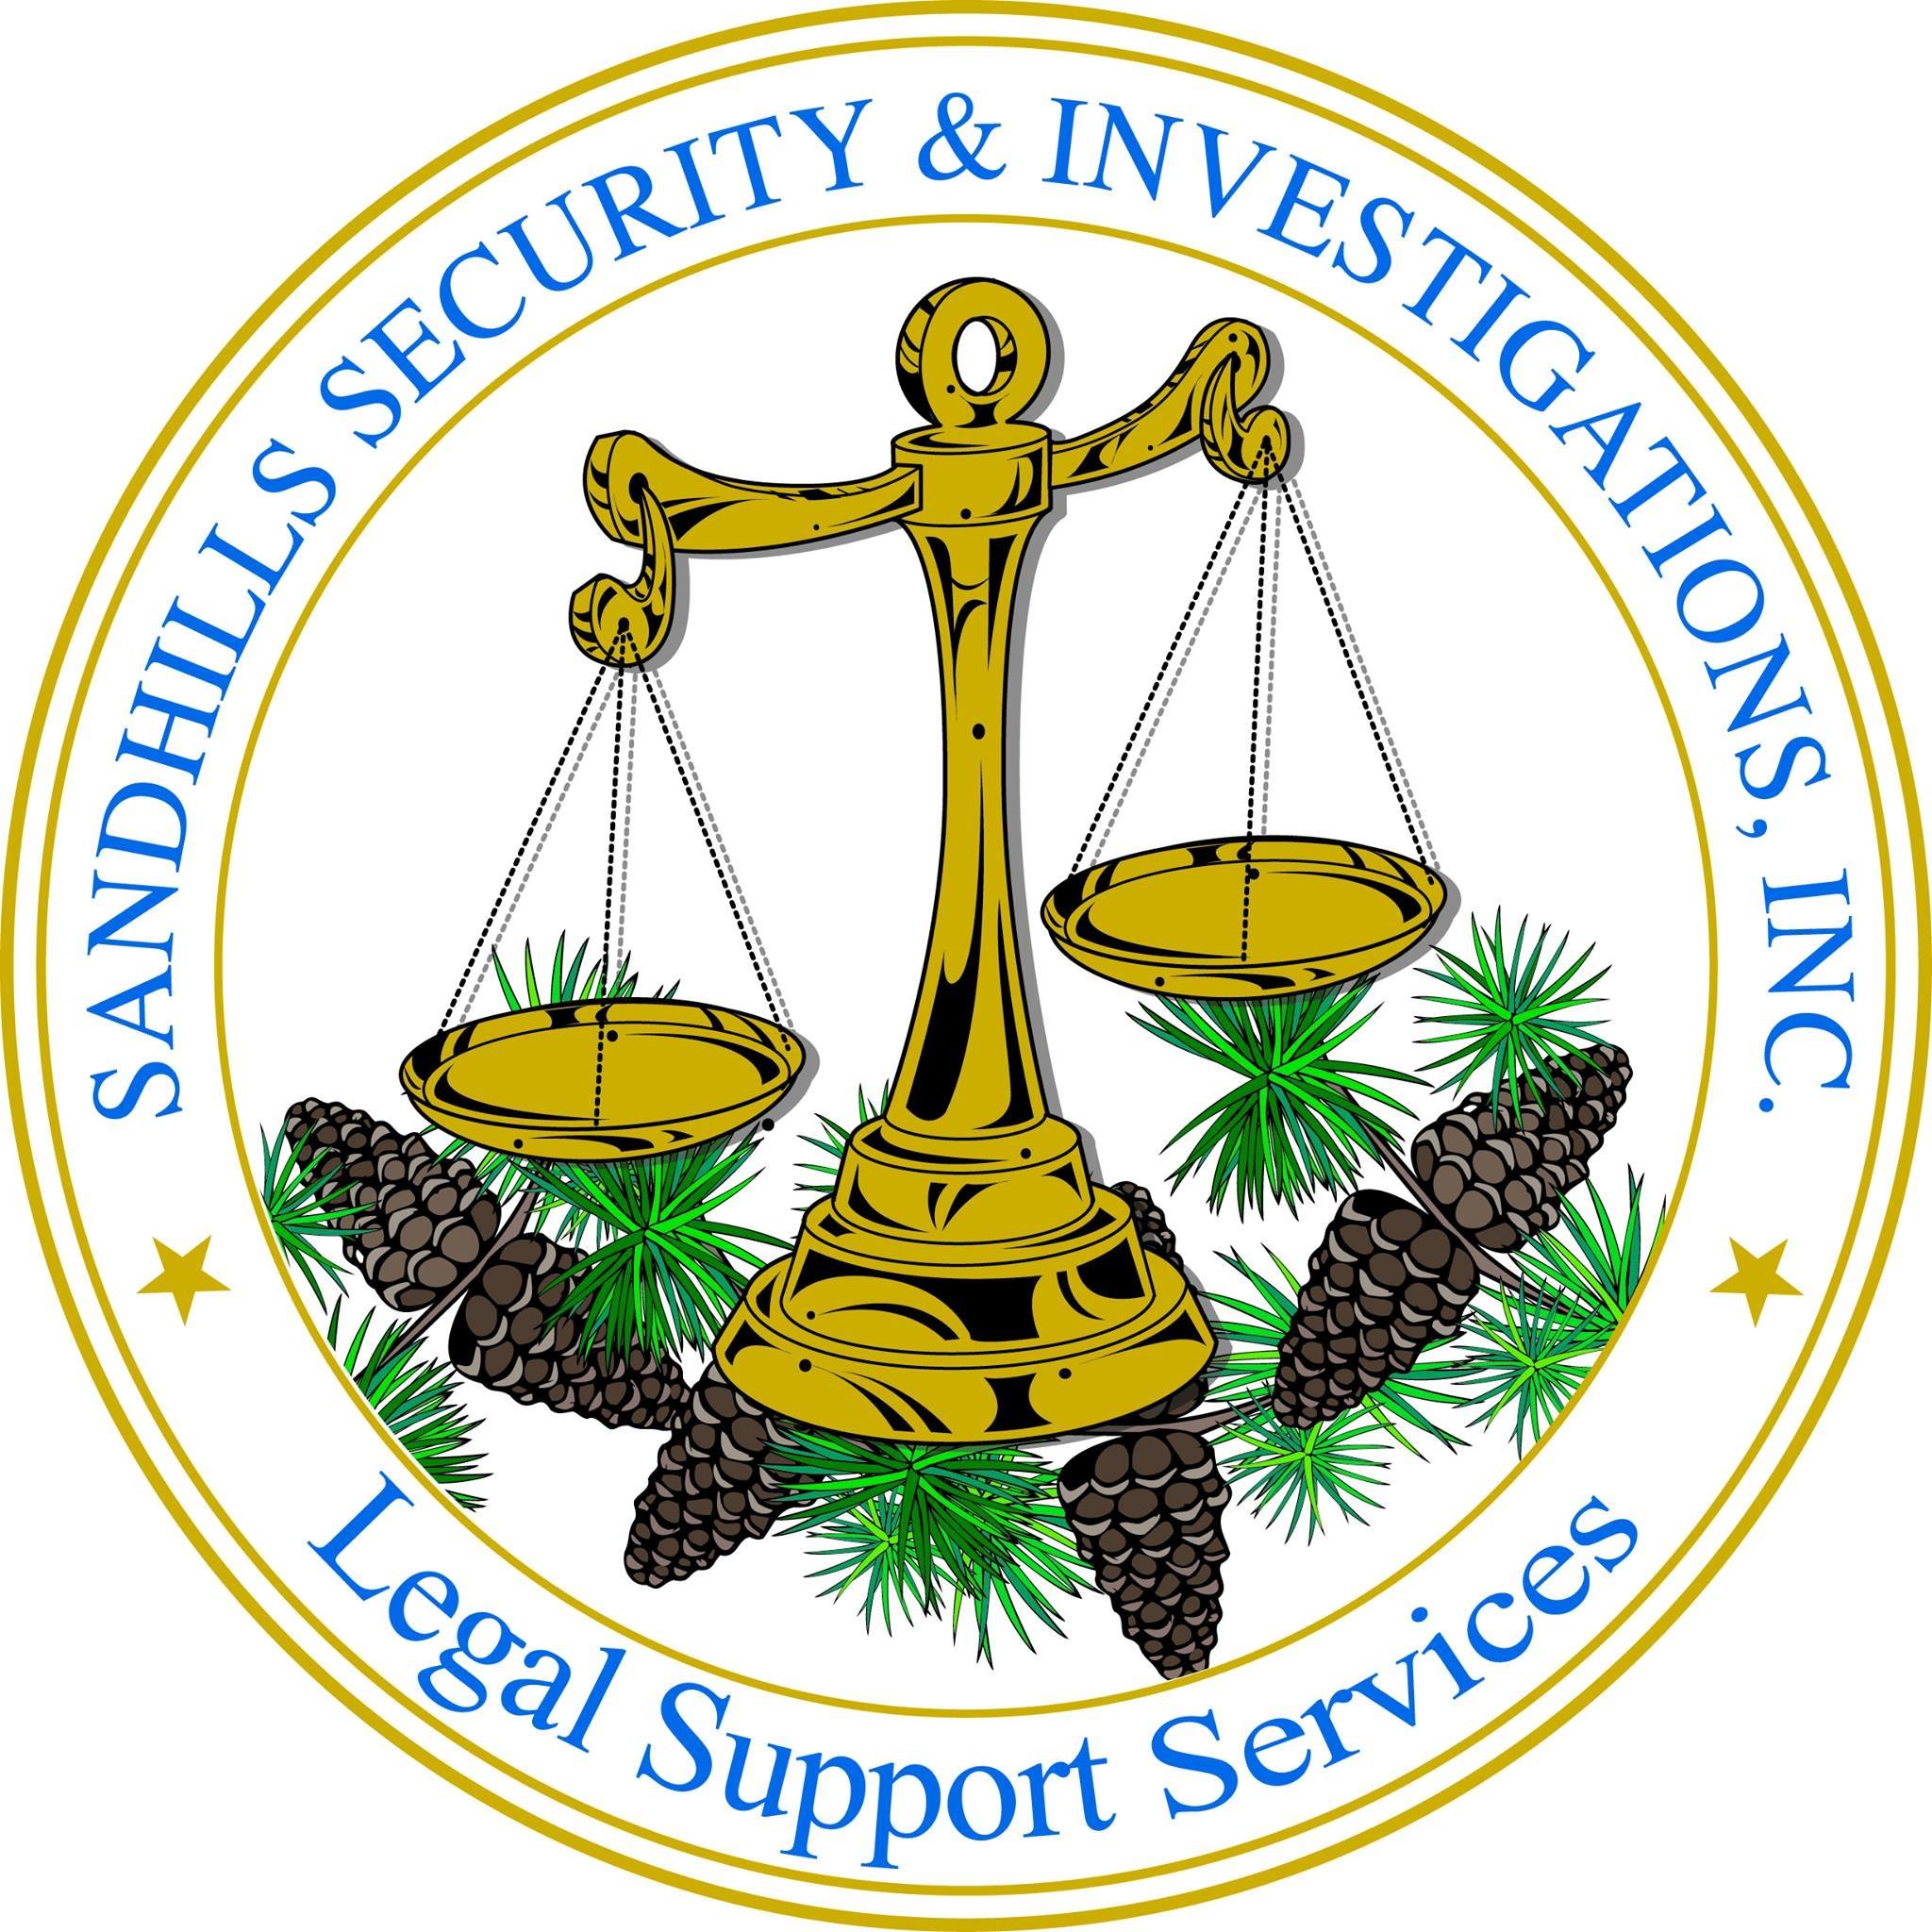 Sandhills Security & Investigation